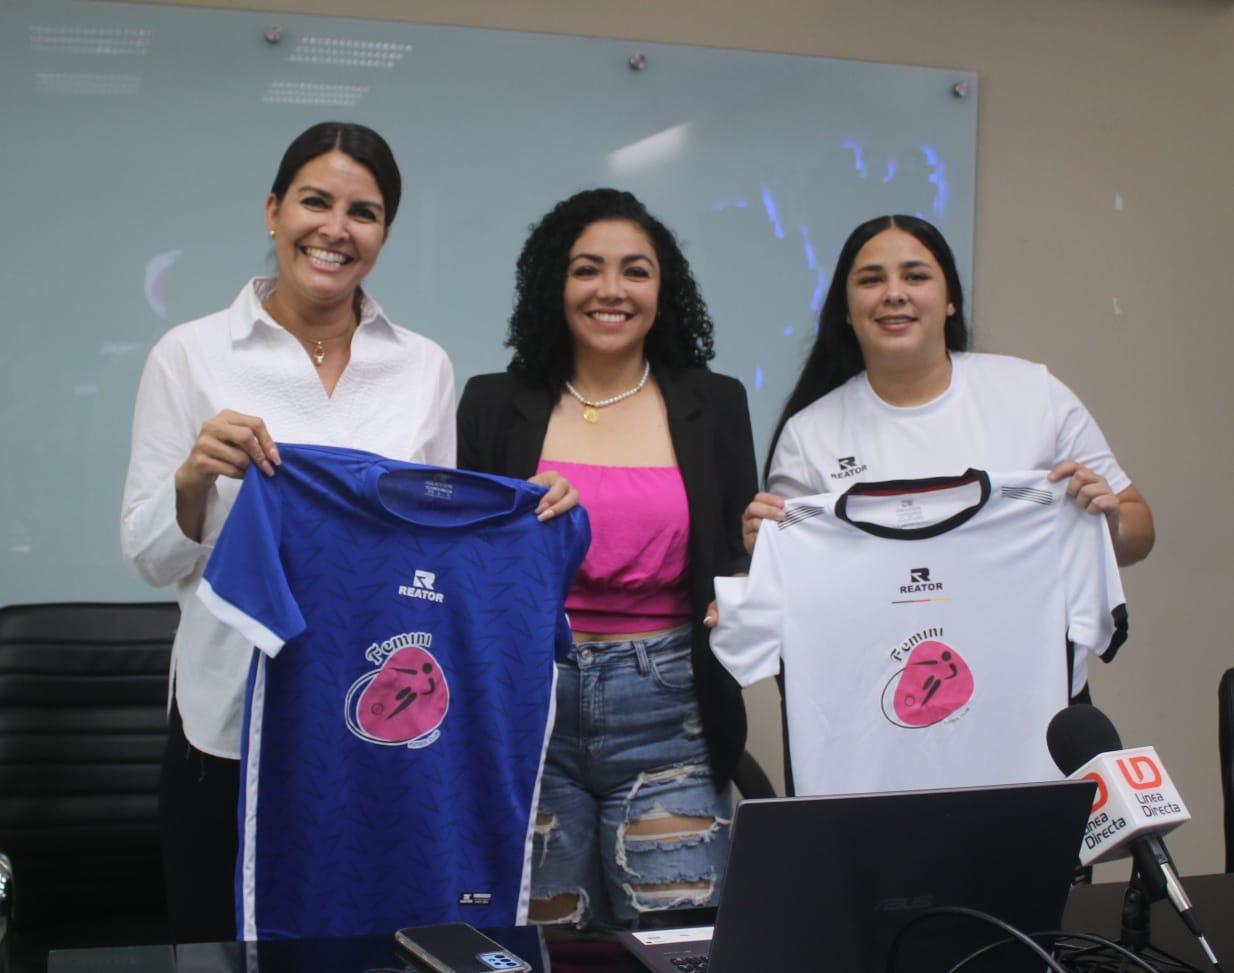 $!Academia de Futbol Femini Club abrirá sus puertas en Mazatlán